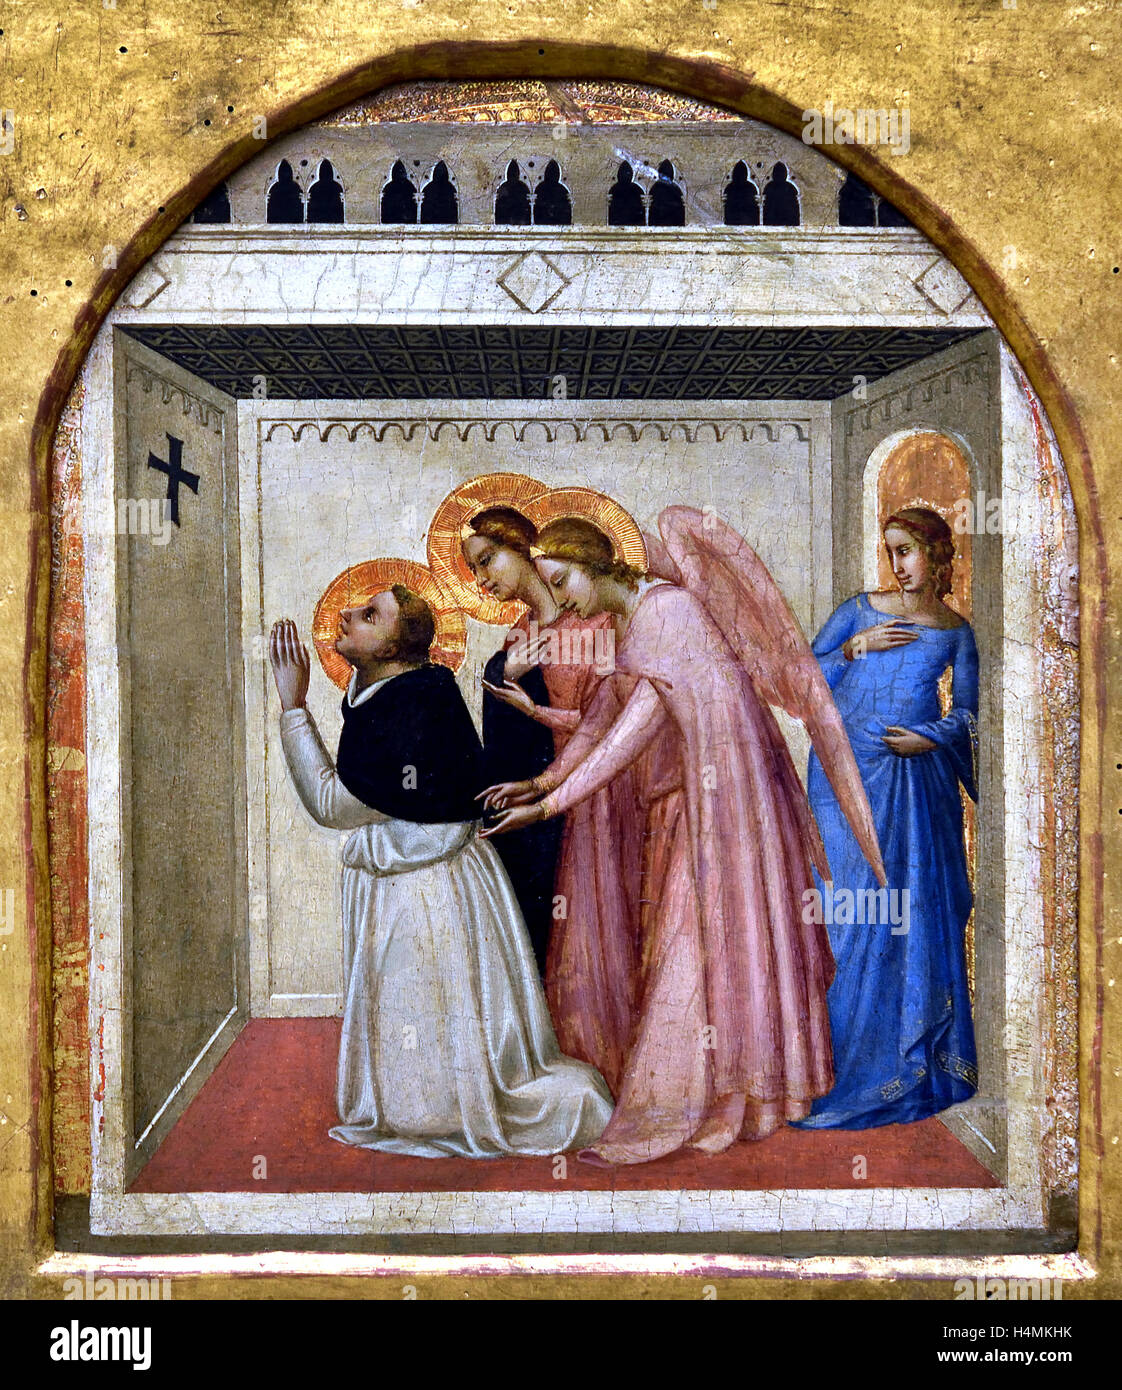 El duelo angelical de Santo Tomás de Aquino 1338 Bernardo Daddi 1290 - 1348 Florencia Italia del siglo xiv pintor italiano ( parte de un predella ) Foto de stock